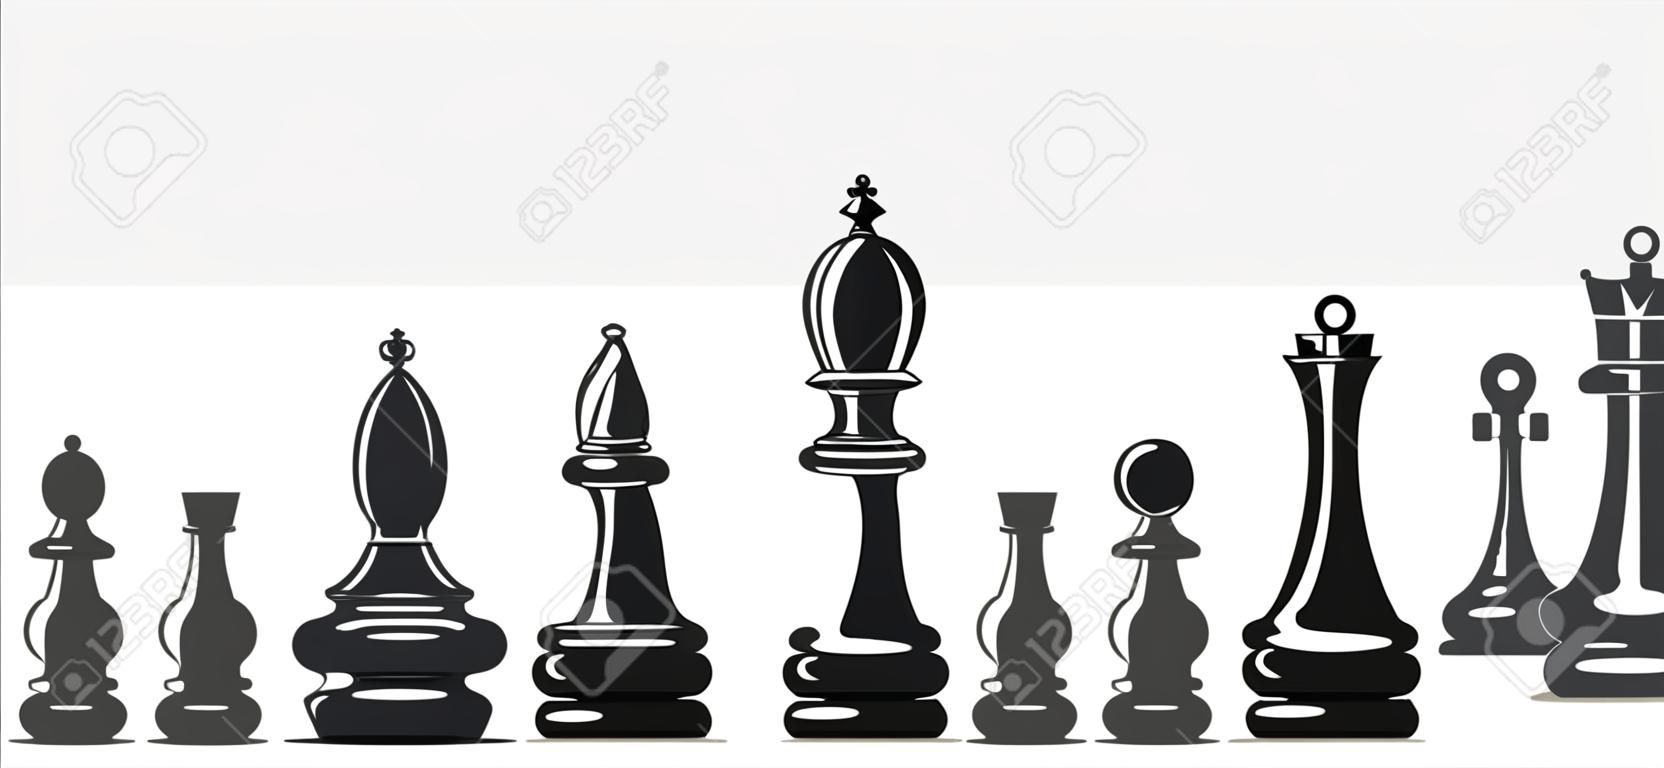 Schach-Figuren auf einem weißen Hintergrund